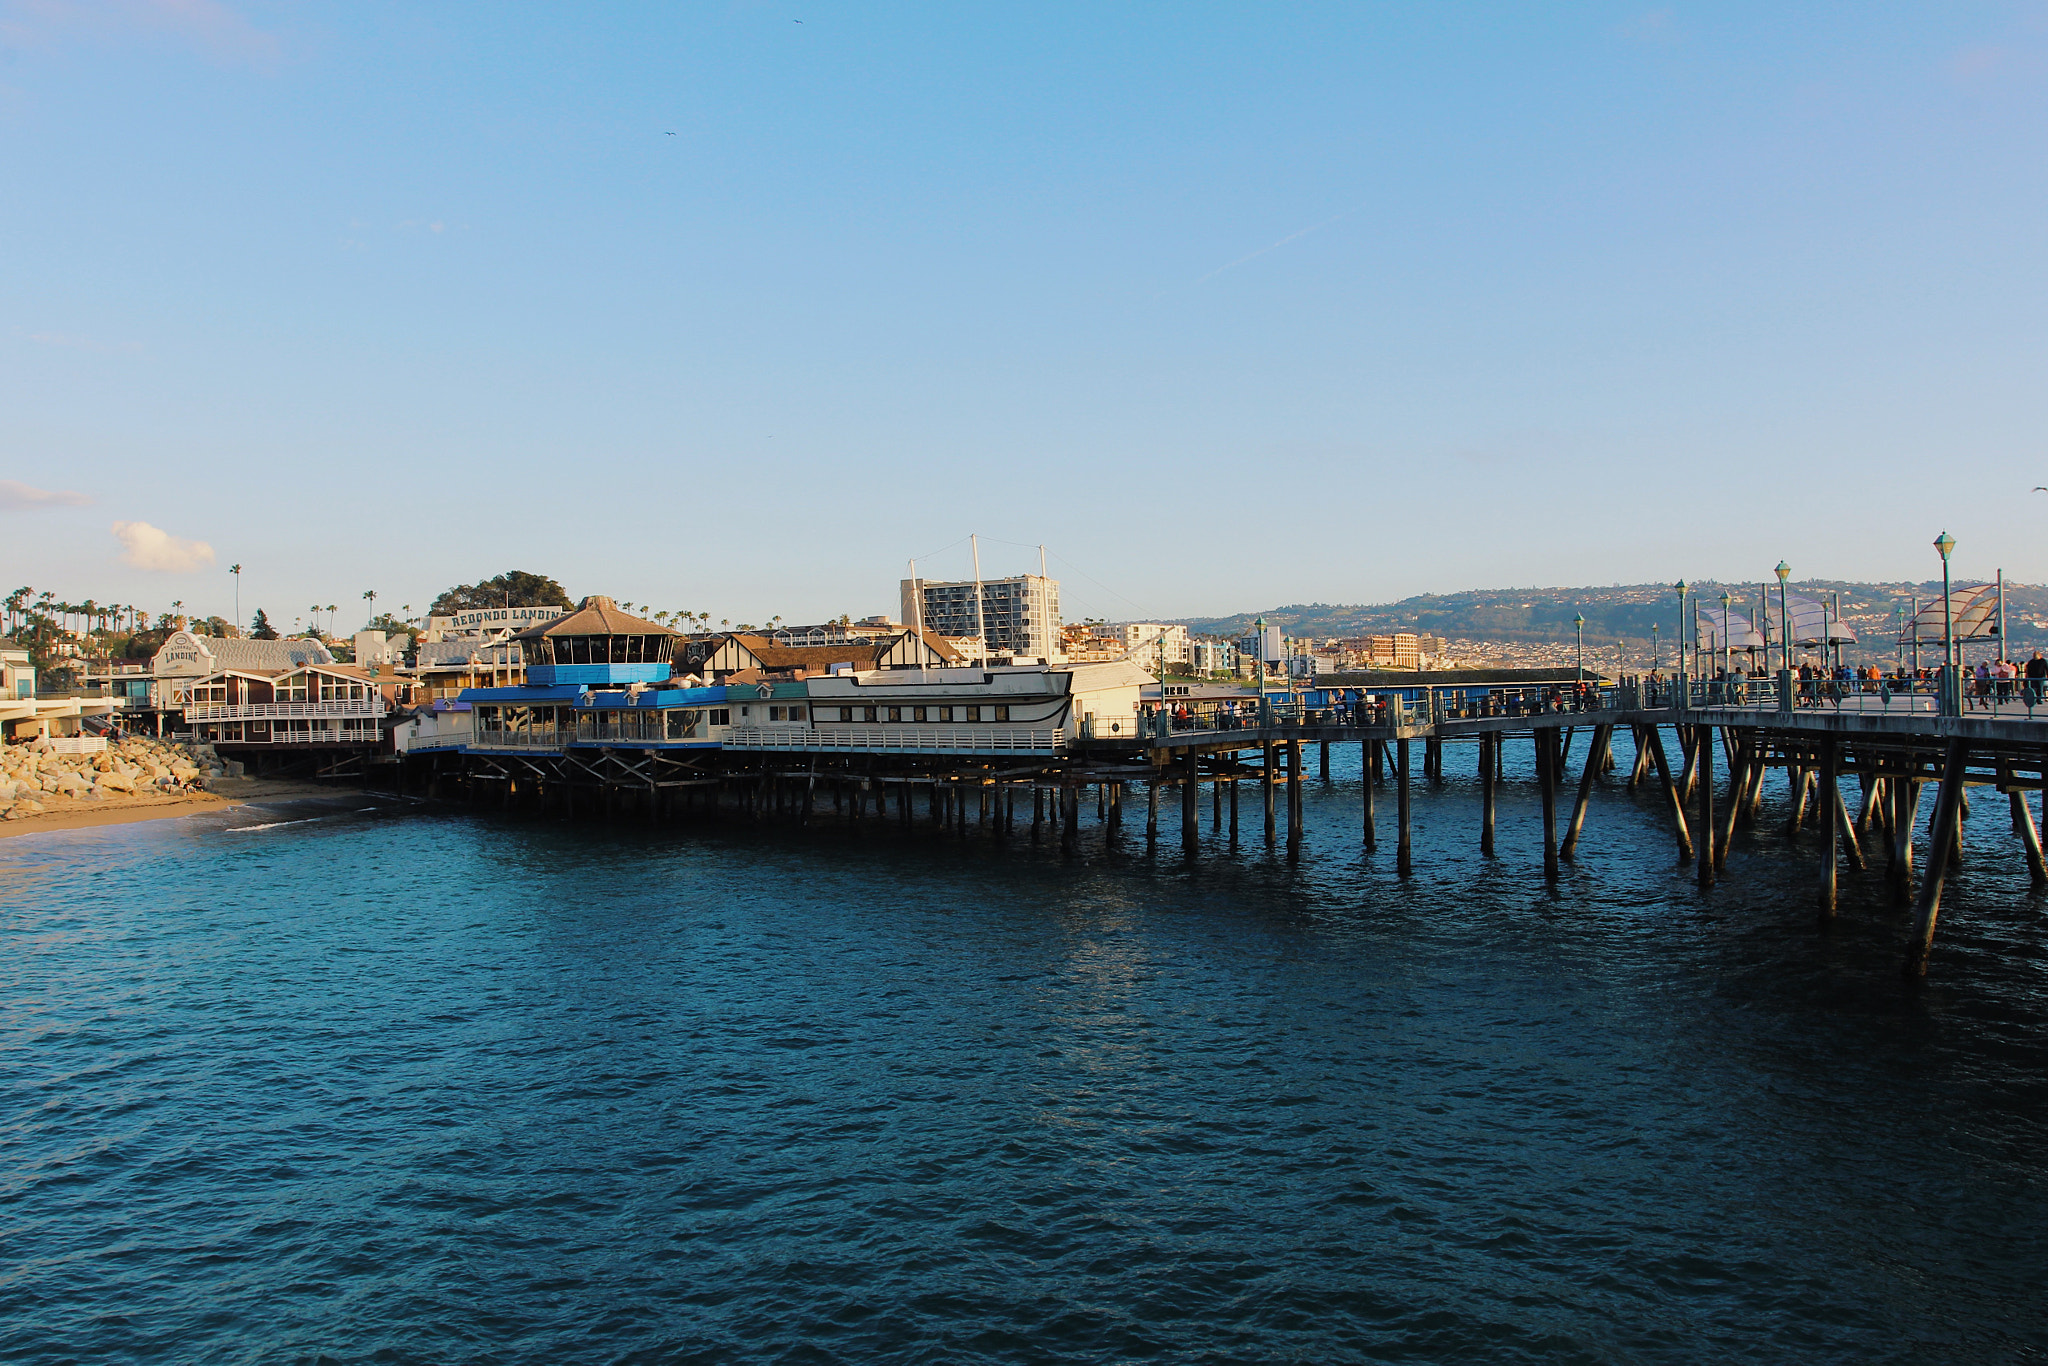 Canon EOS 600D (Rebel EOS T3i / EOS Kiss X5) sample photo. Redondo beach pier, california photography